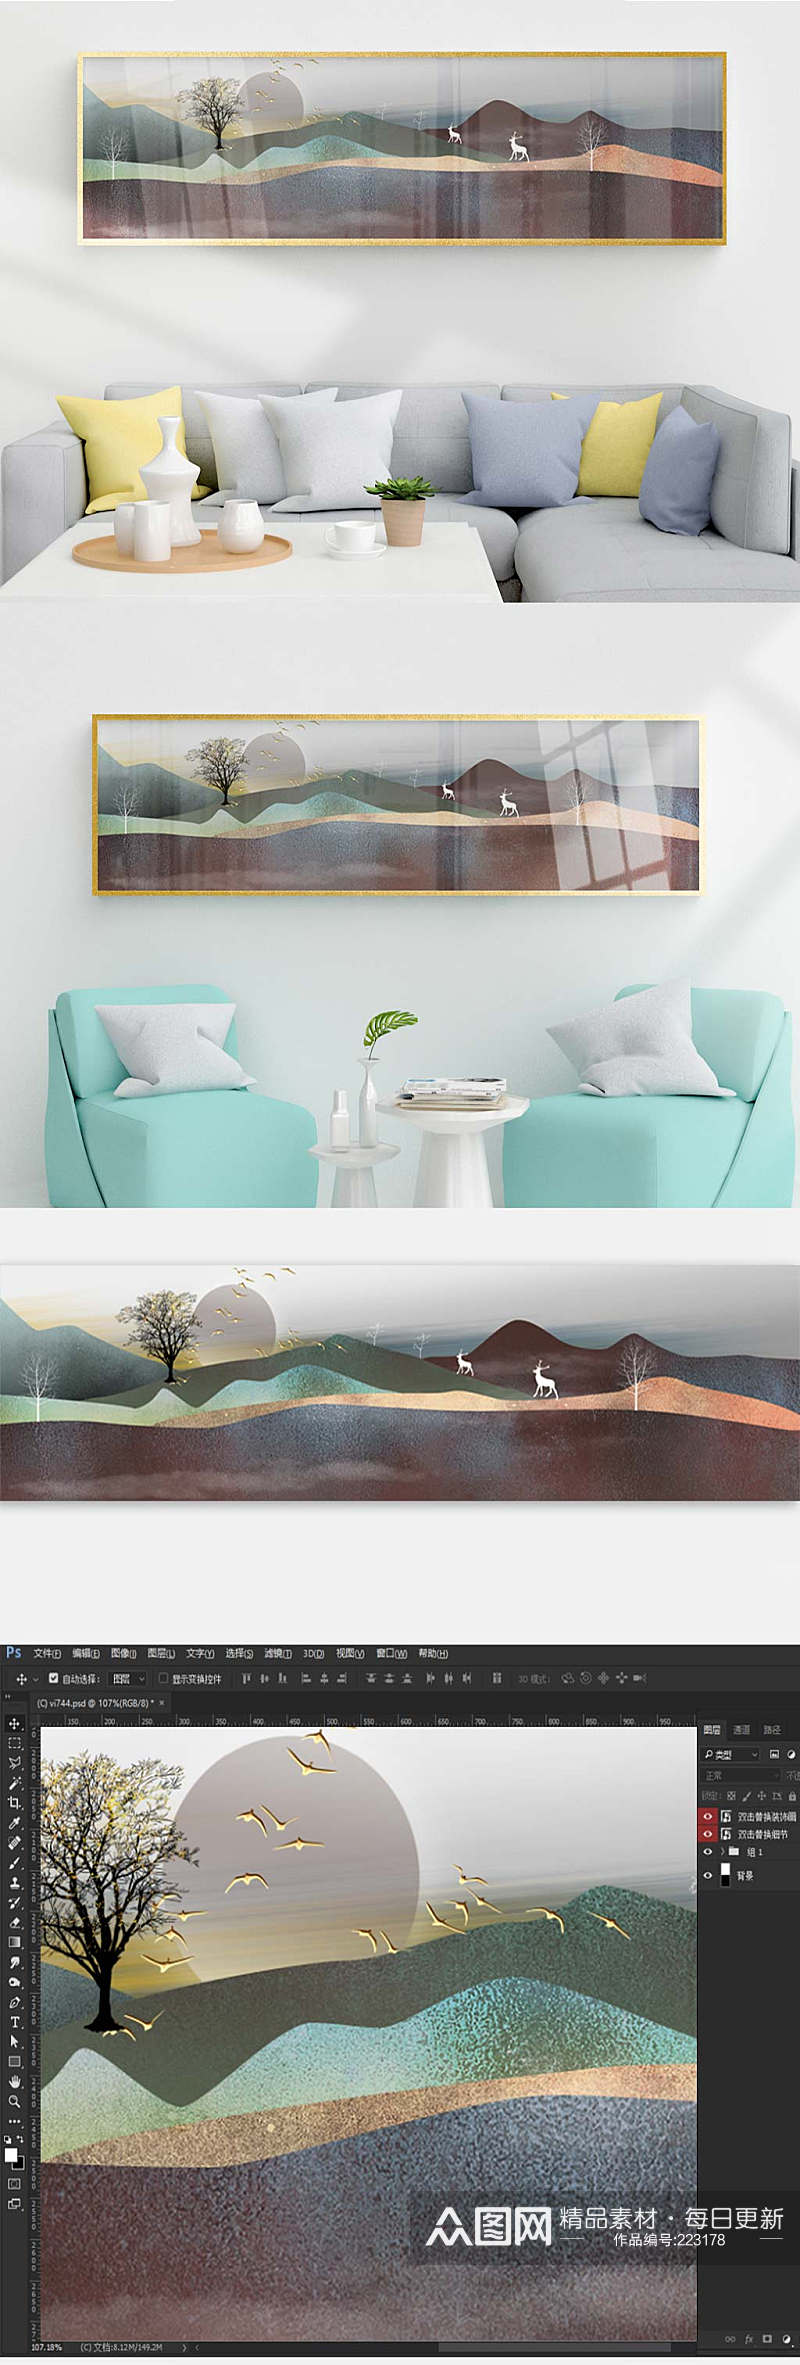 抽象山水风景床头装饰画素材